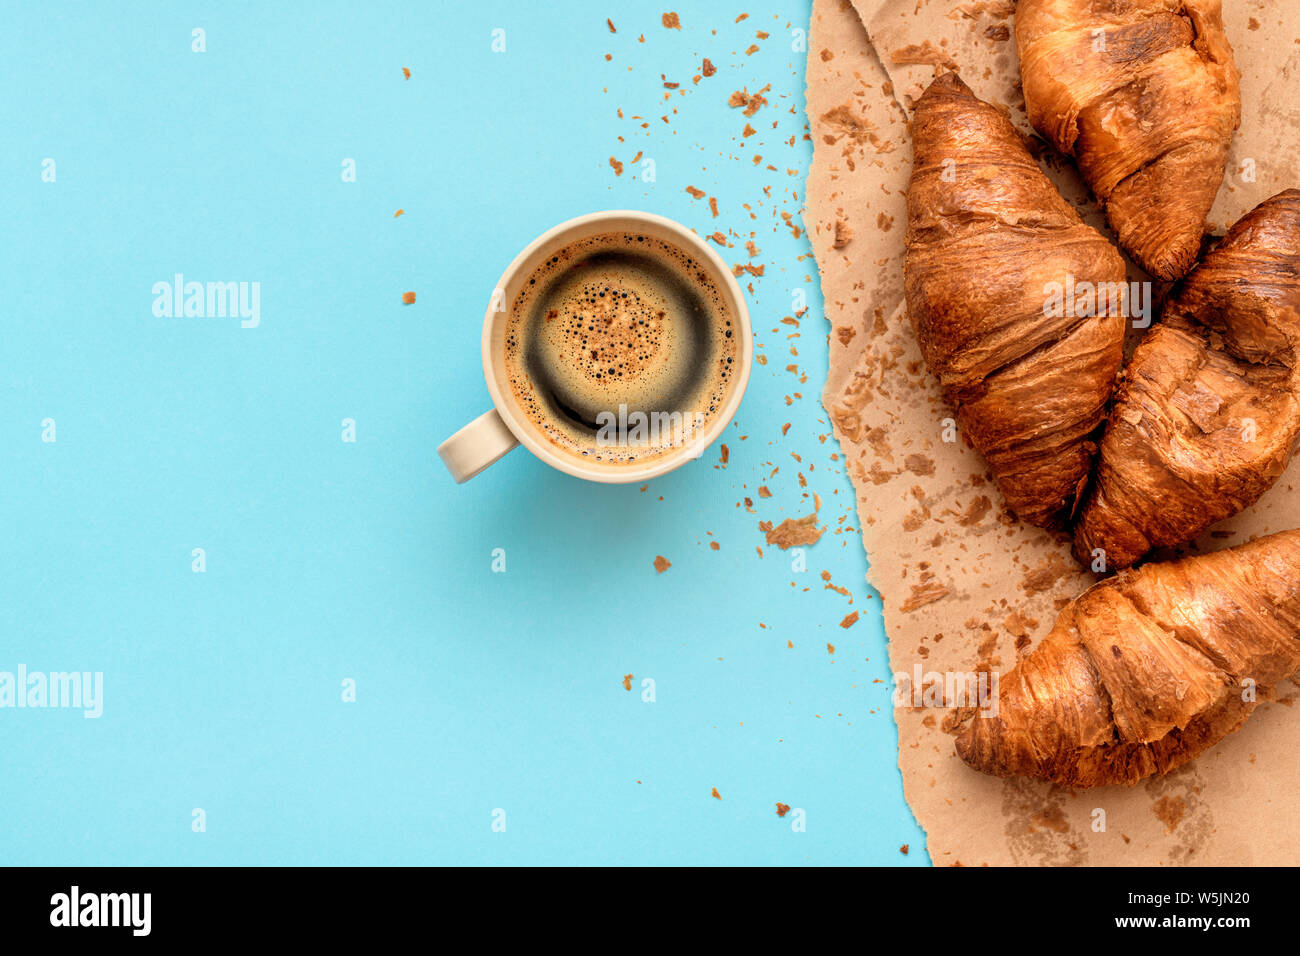 Kaffee und Croissant zum Frühstück, Blick von oben auf die heißen Getränk in Tasse Kaffee und leckeren Backwaren Stockfoto